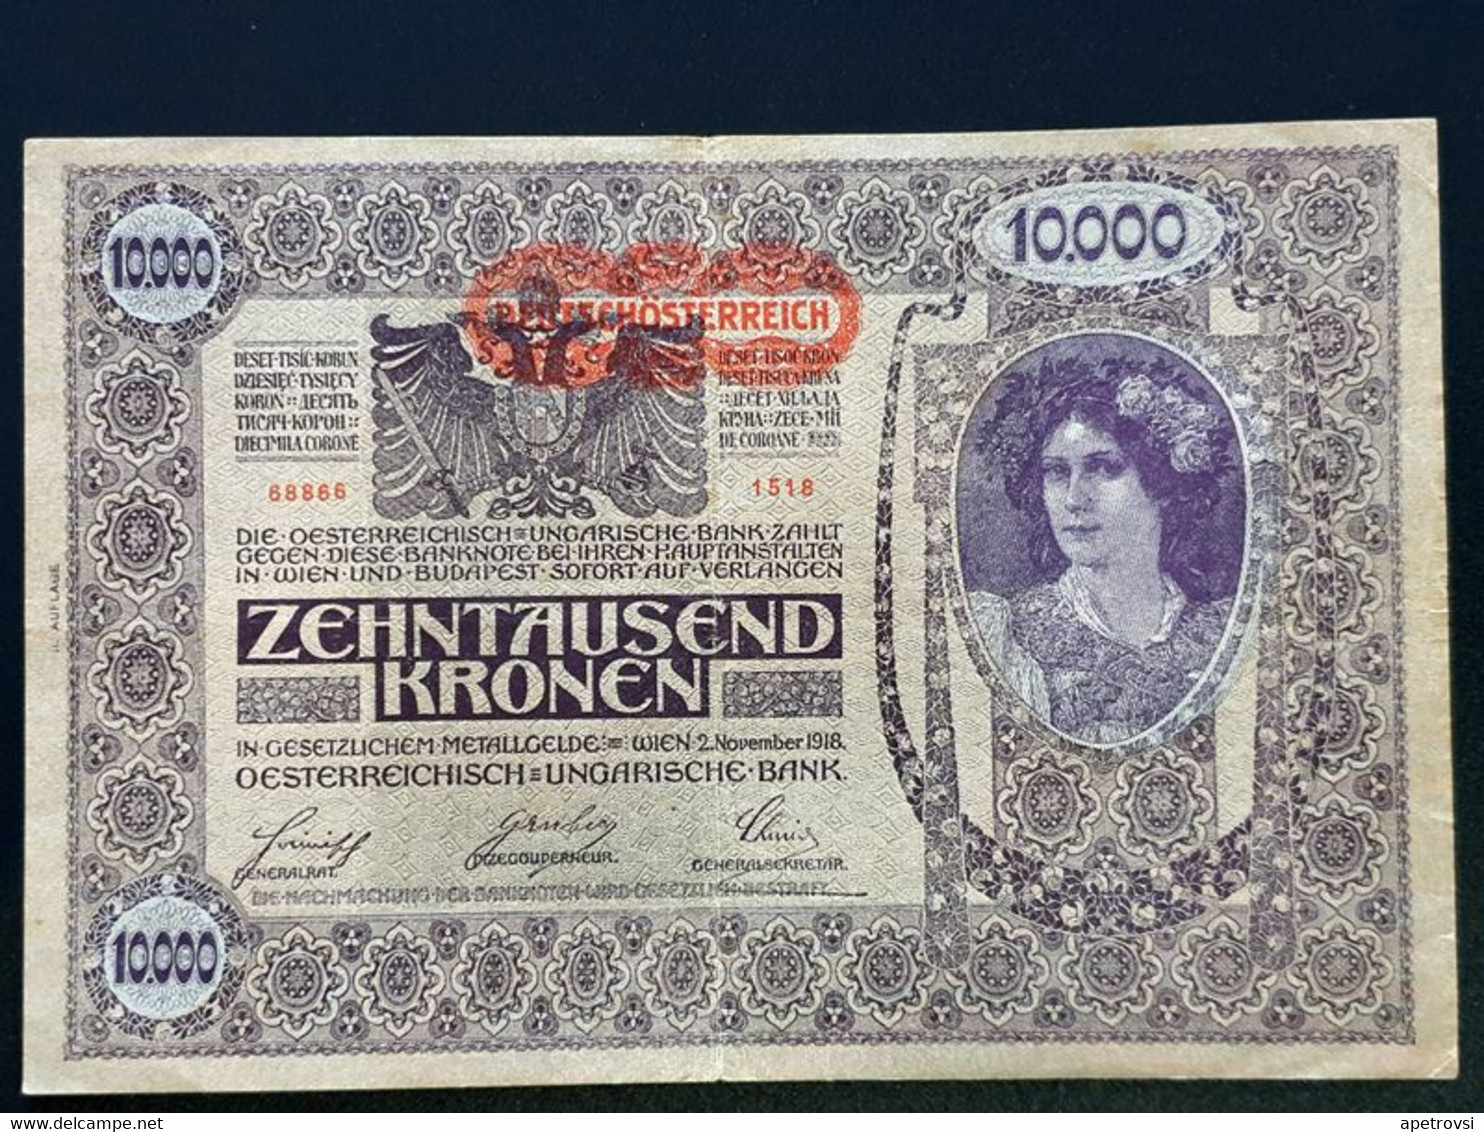 Austria / Hungary 1919-1922, 10-100000 Kronen (10 pcs), (P-51, P-53, P-54, P-56, P-59, P-61, P-65, P-79, P-80, P-81)